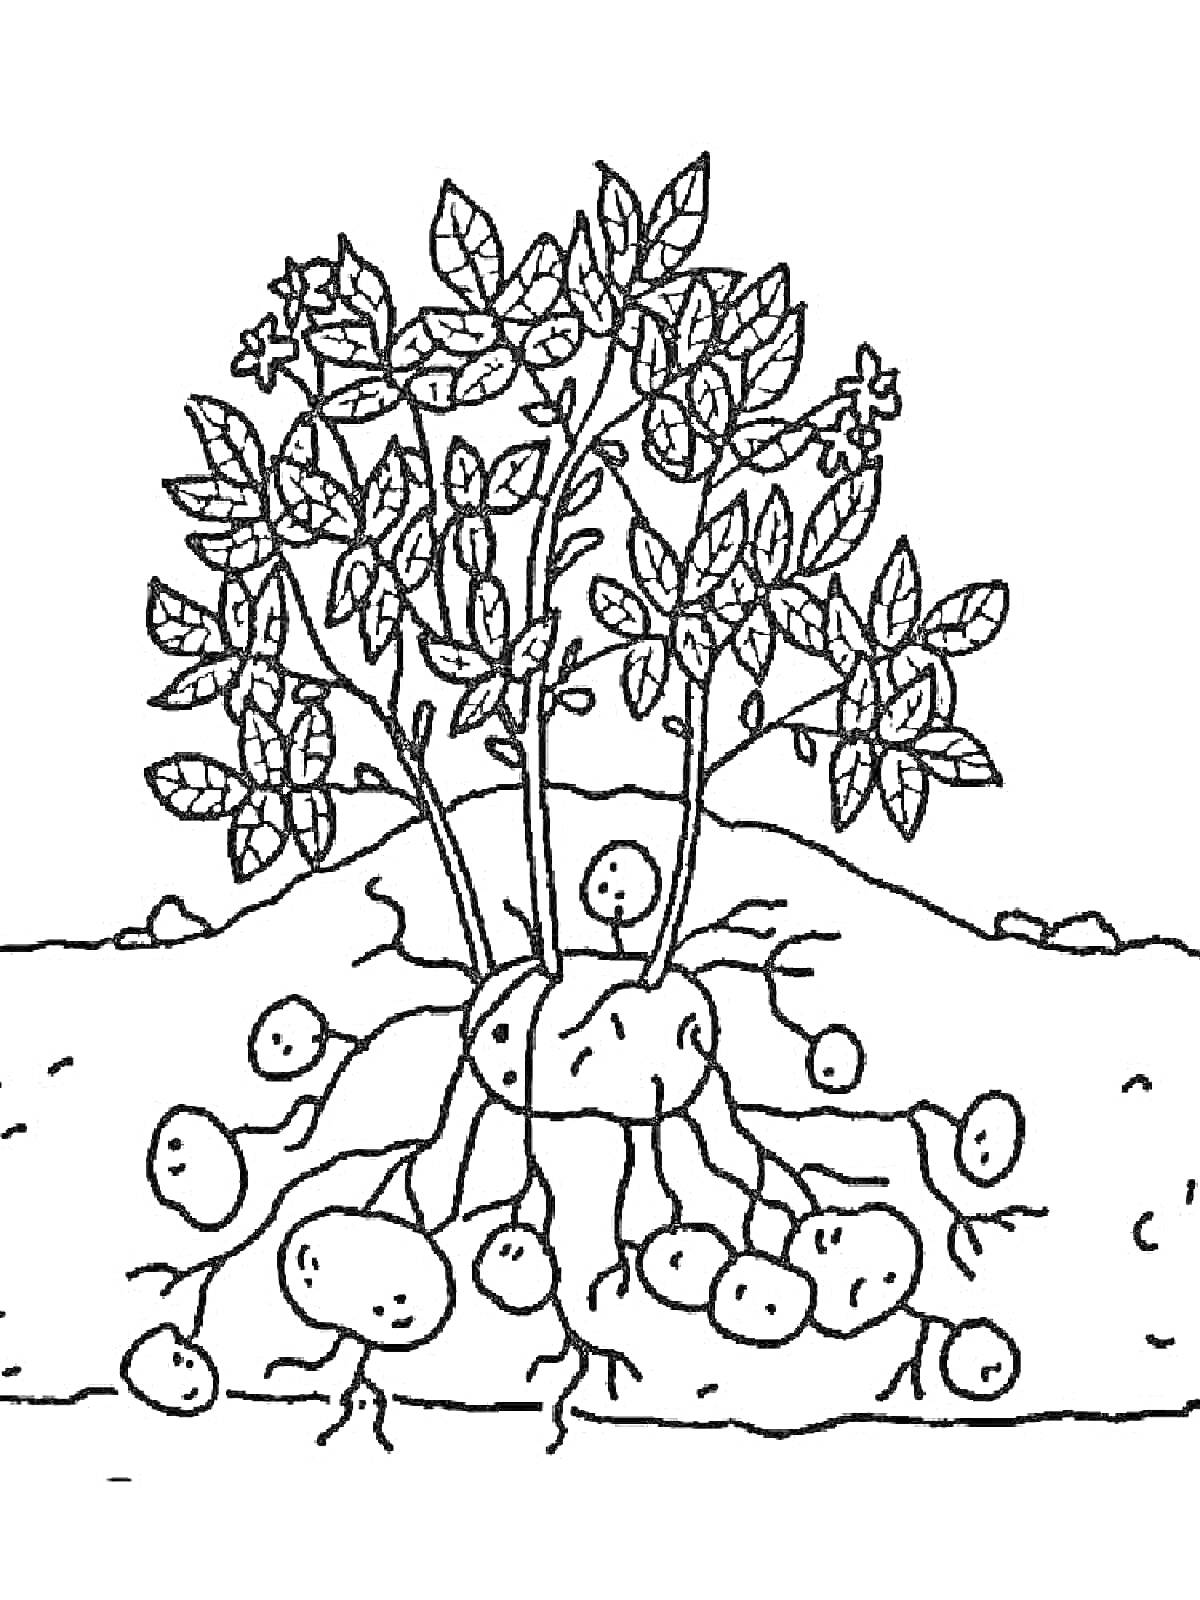 Картофельное растение с клубнями под землей